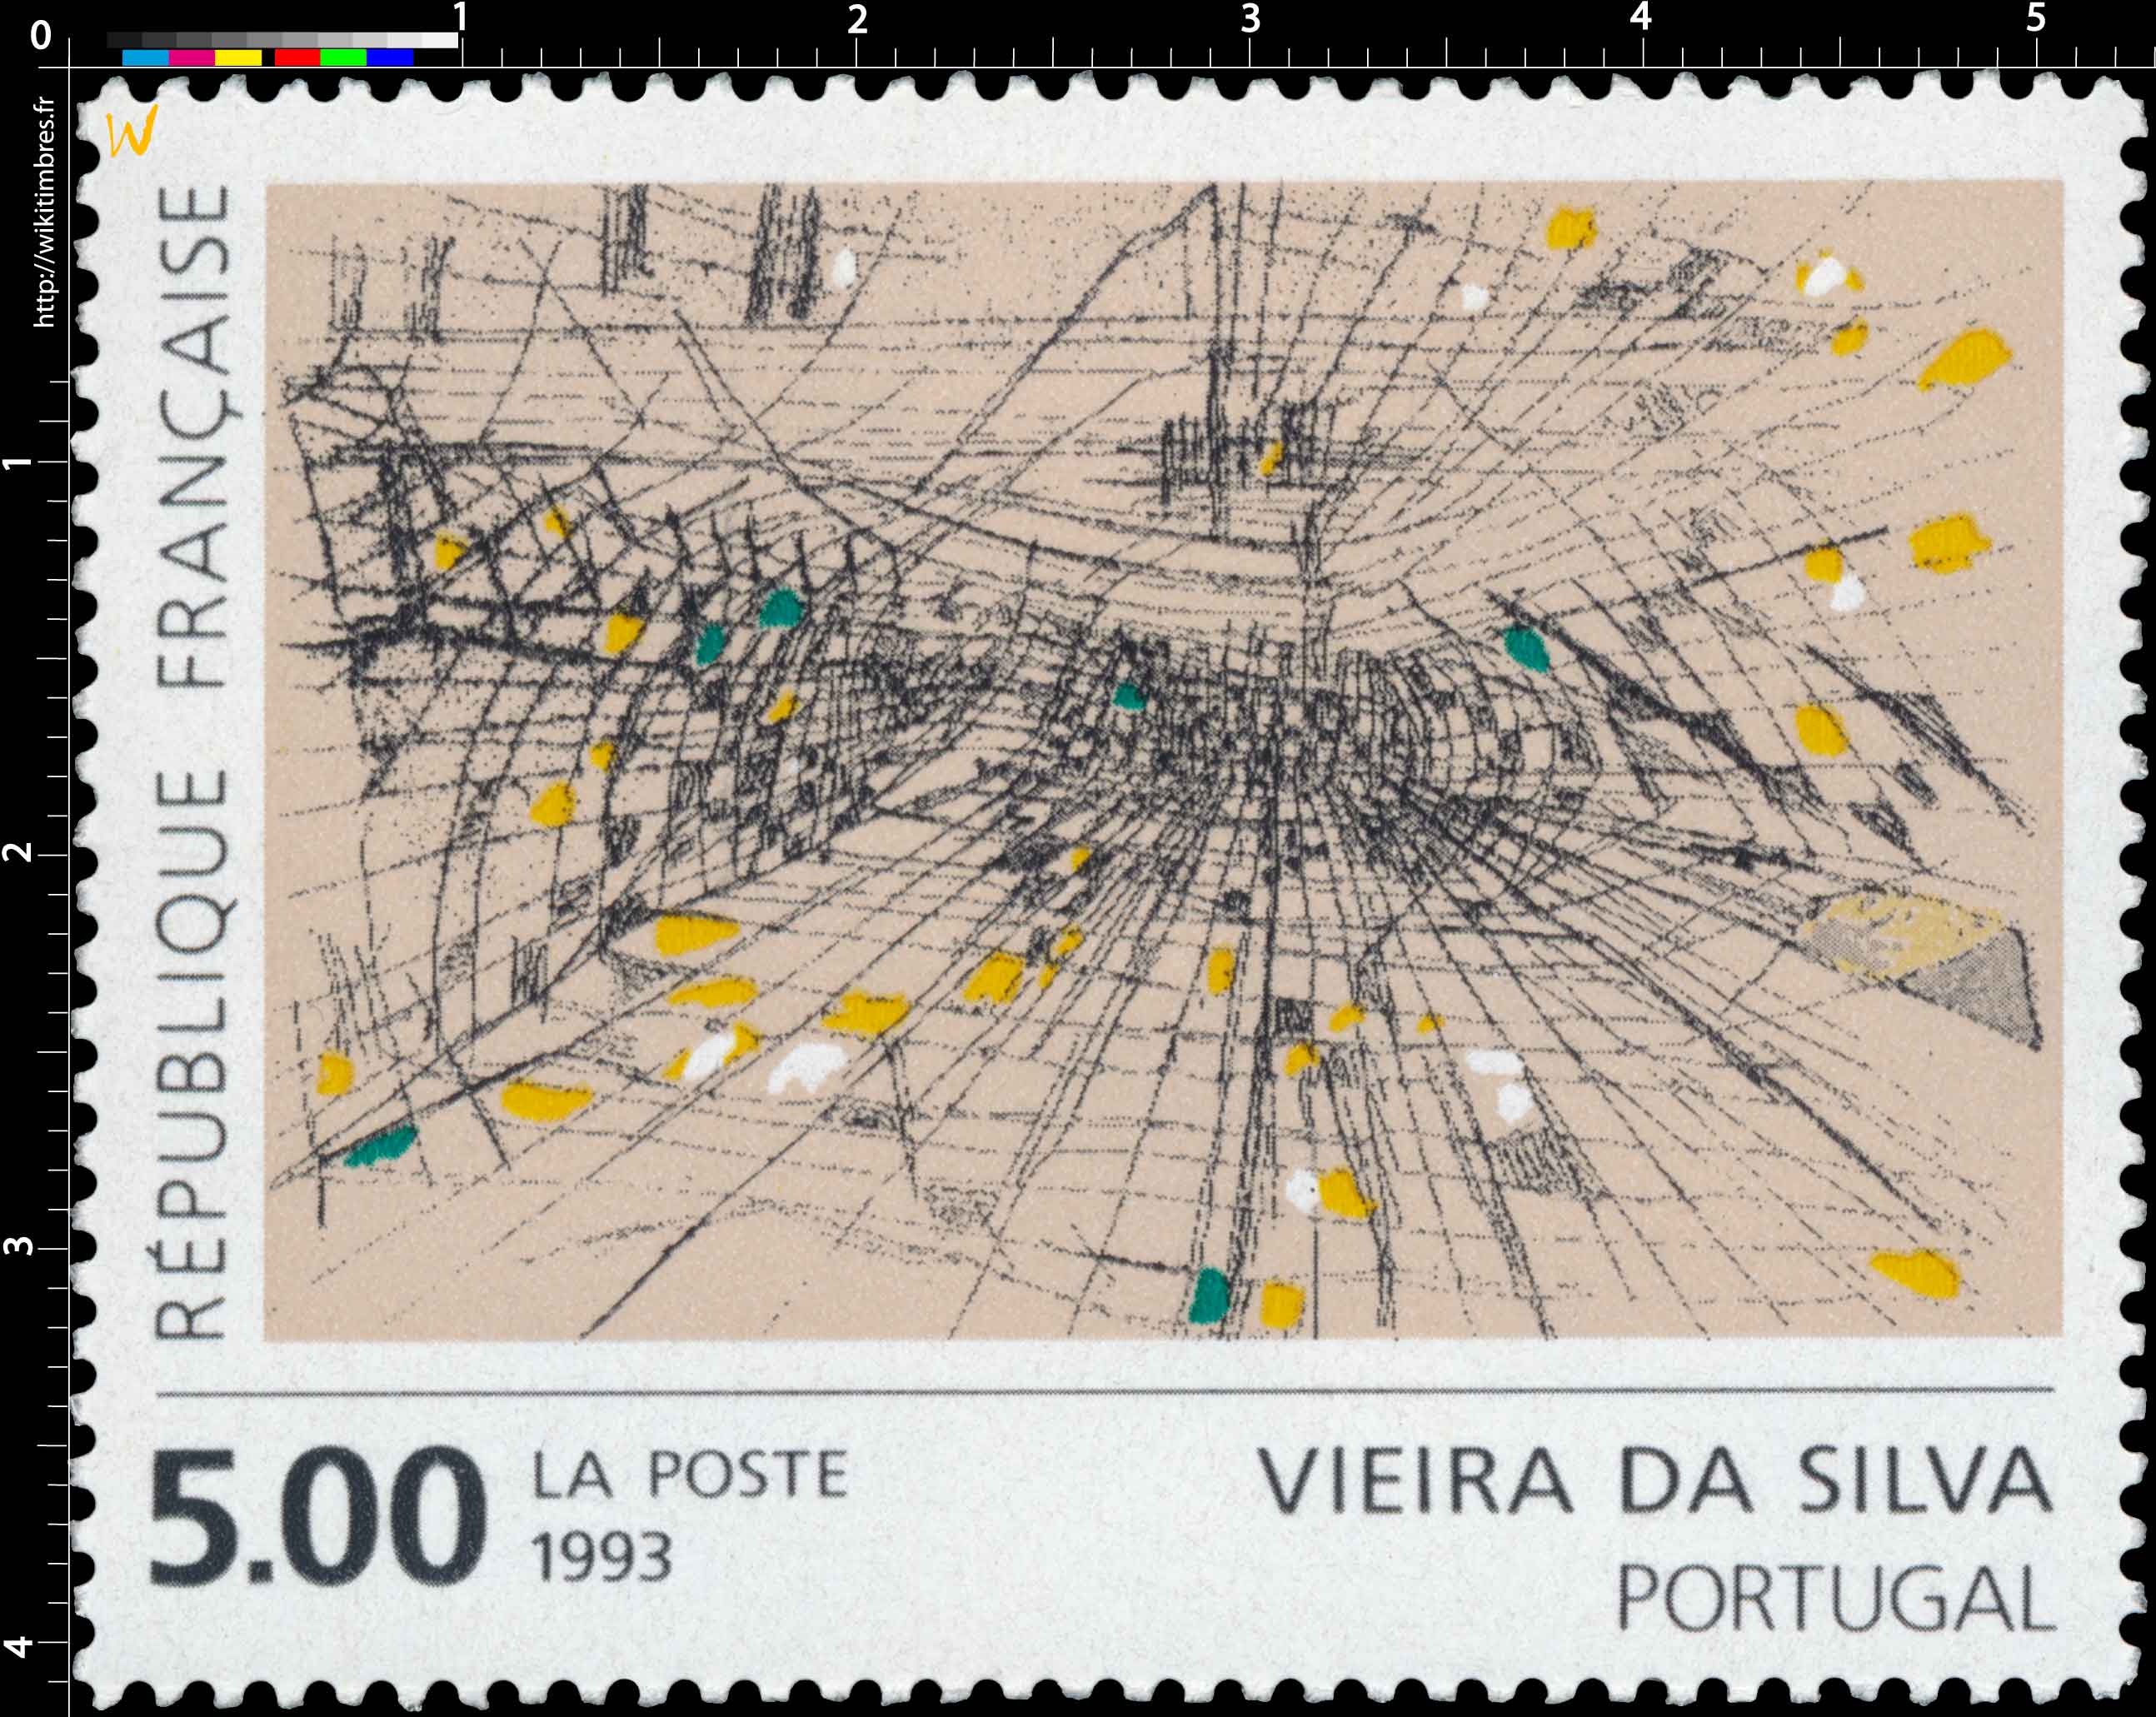 1993 VIEIRA DA SILVA PORTUGAL